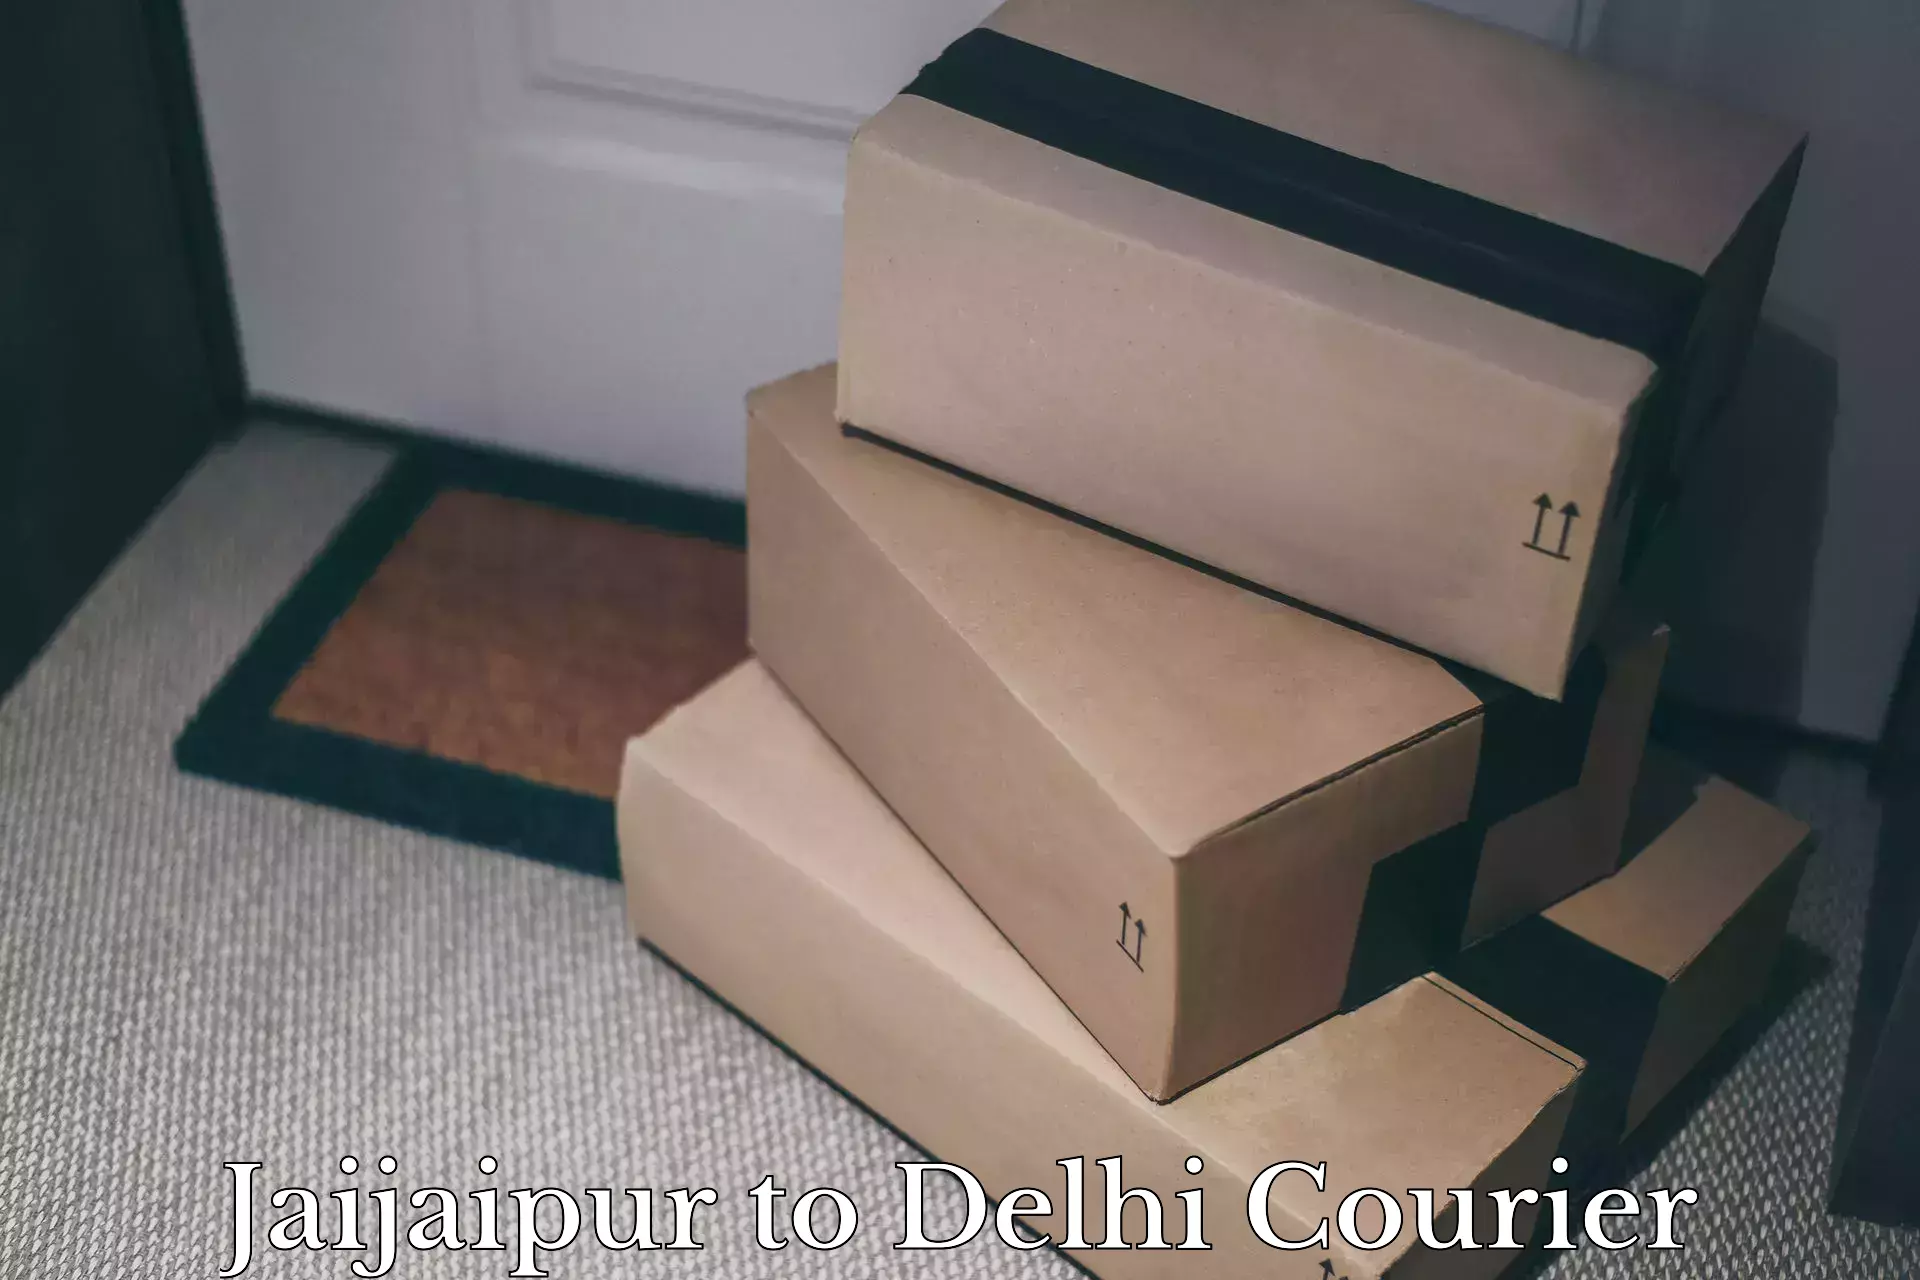 Furniture delivery service Jaijaipur to Subhash Nagar